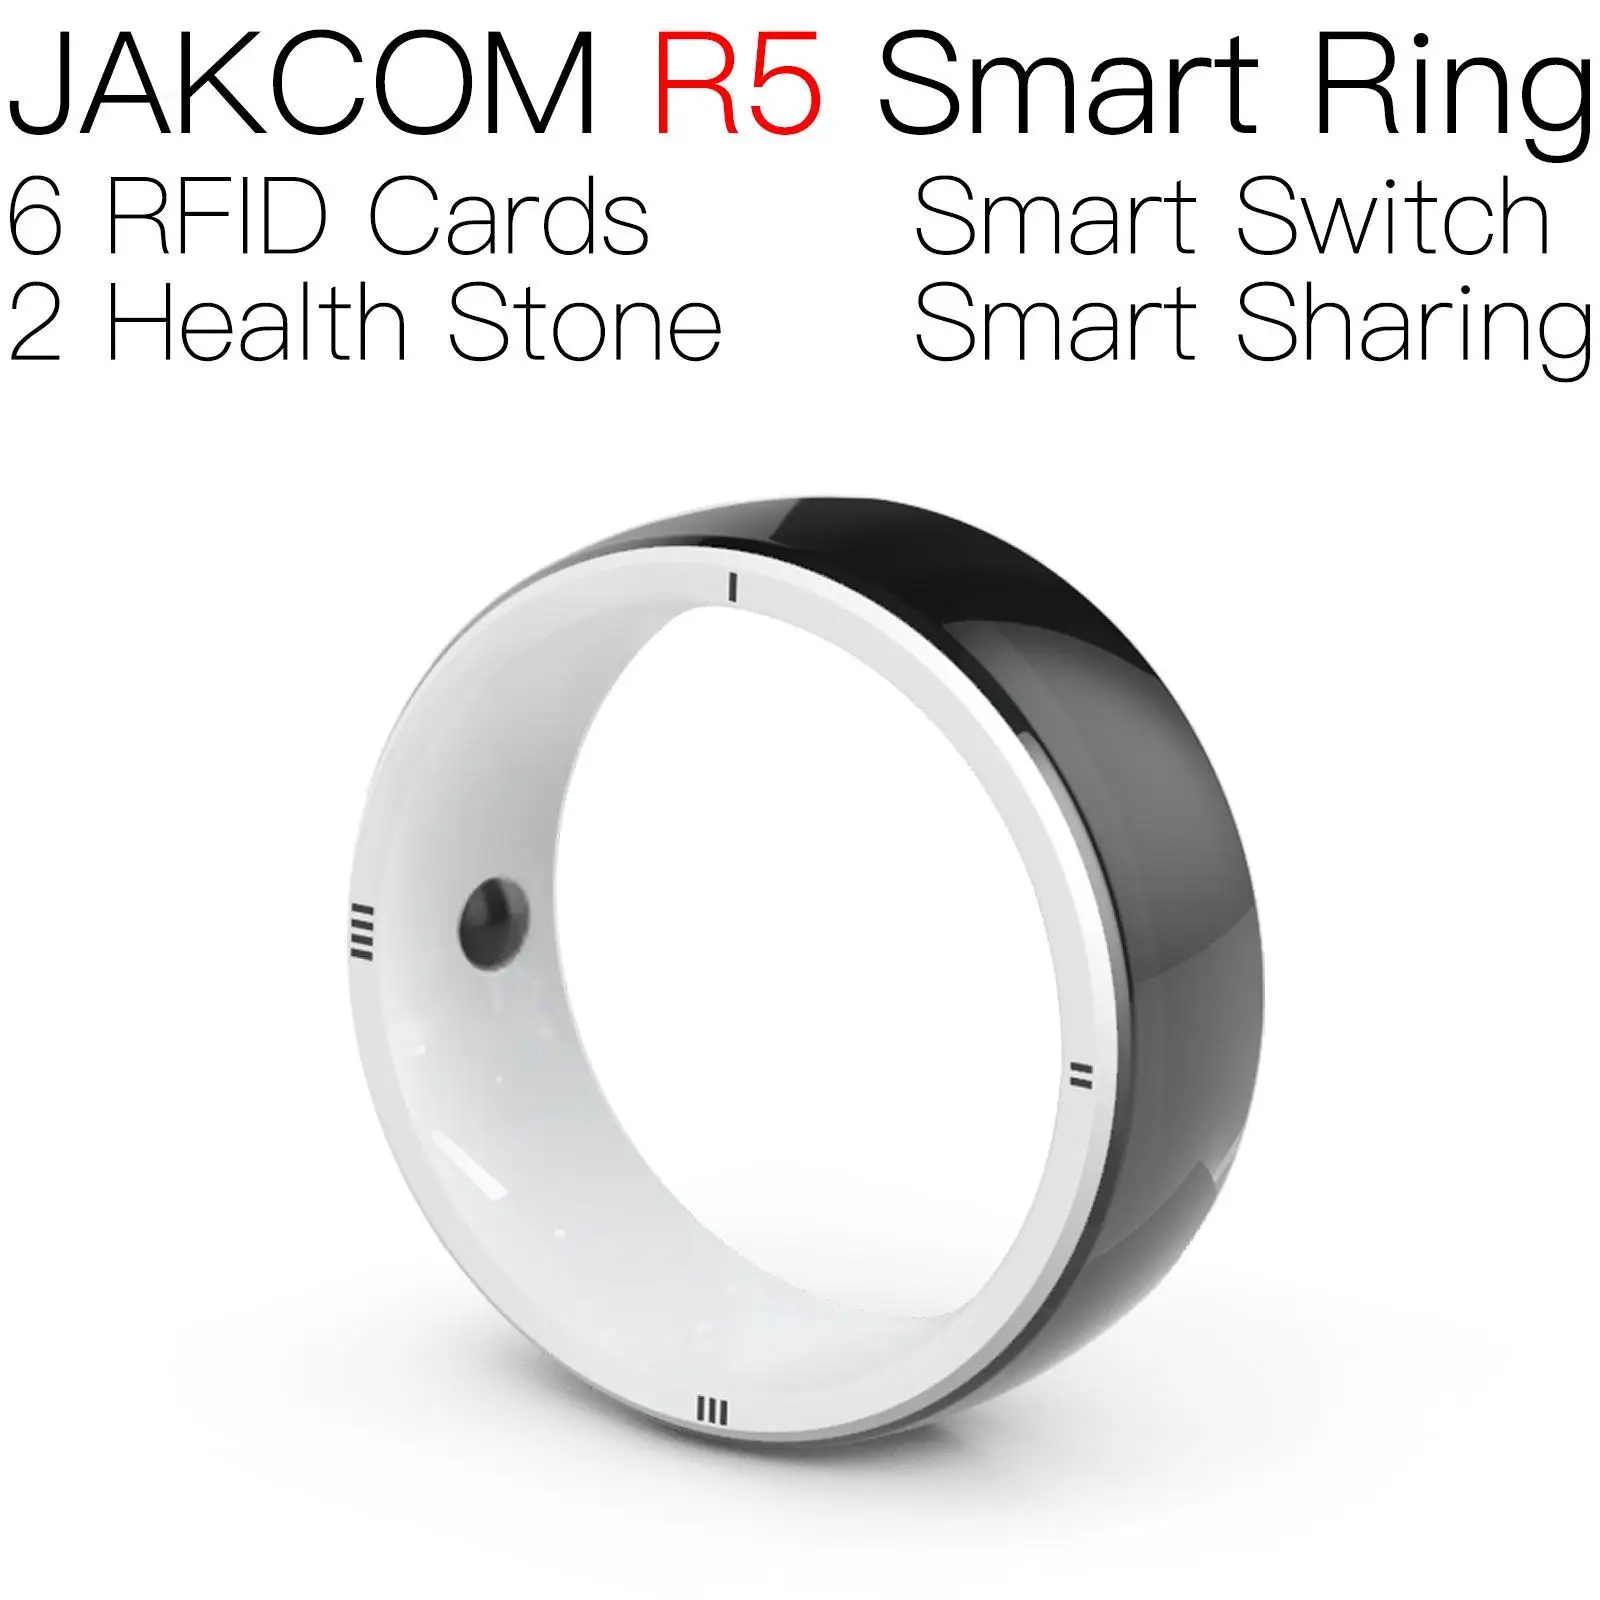 

Умное кольцо JAKCOM R5, лучший подарок с rfid-картой, считывателем microcip для домашних животных, saviland, Официальный магазин гвоздей, uhf, анти-картой, новый horizon